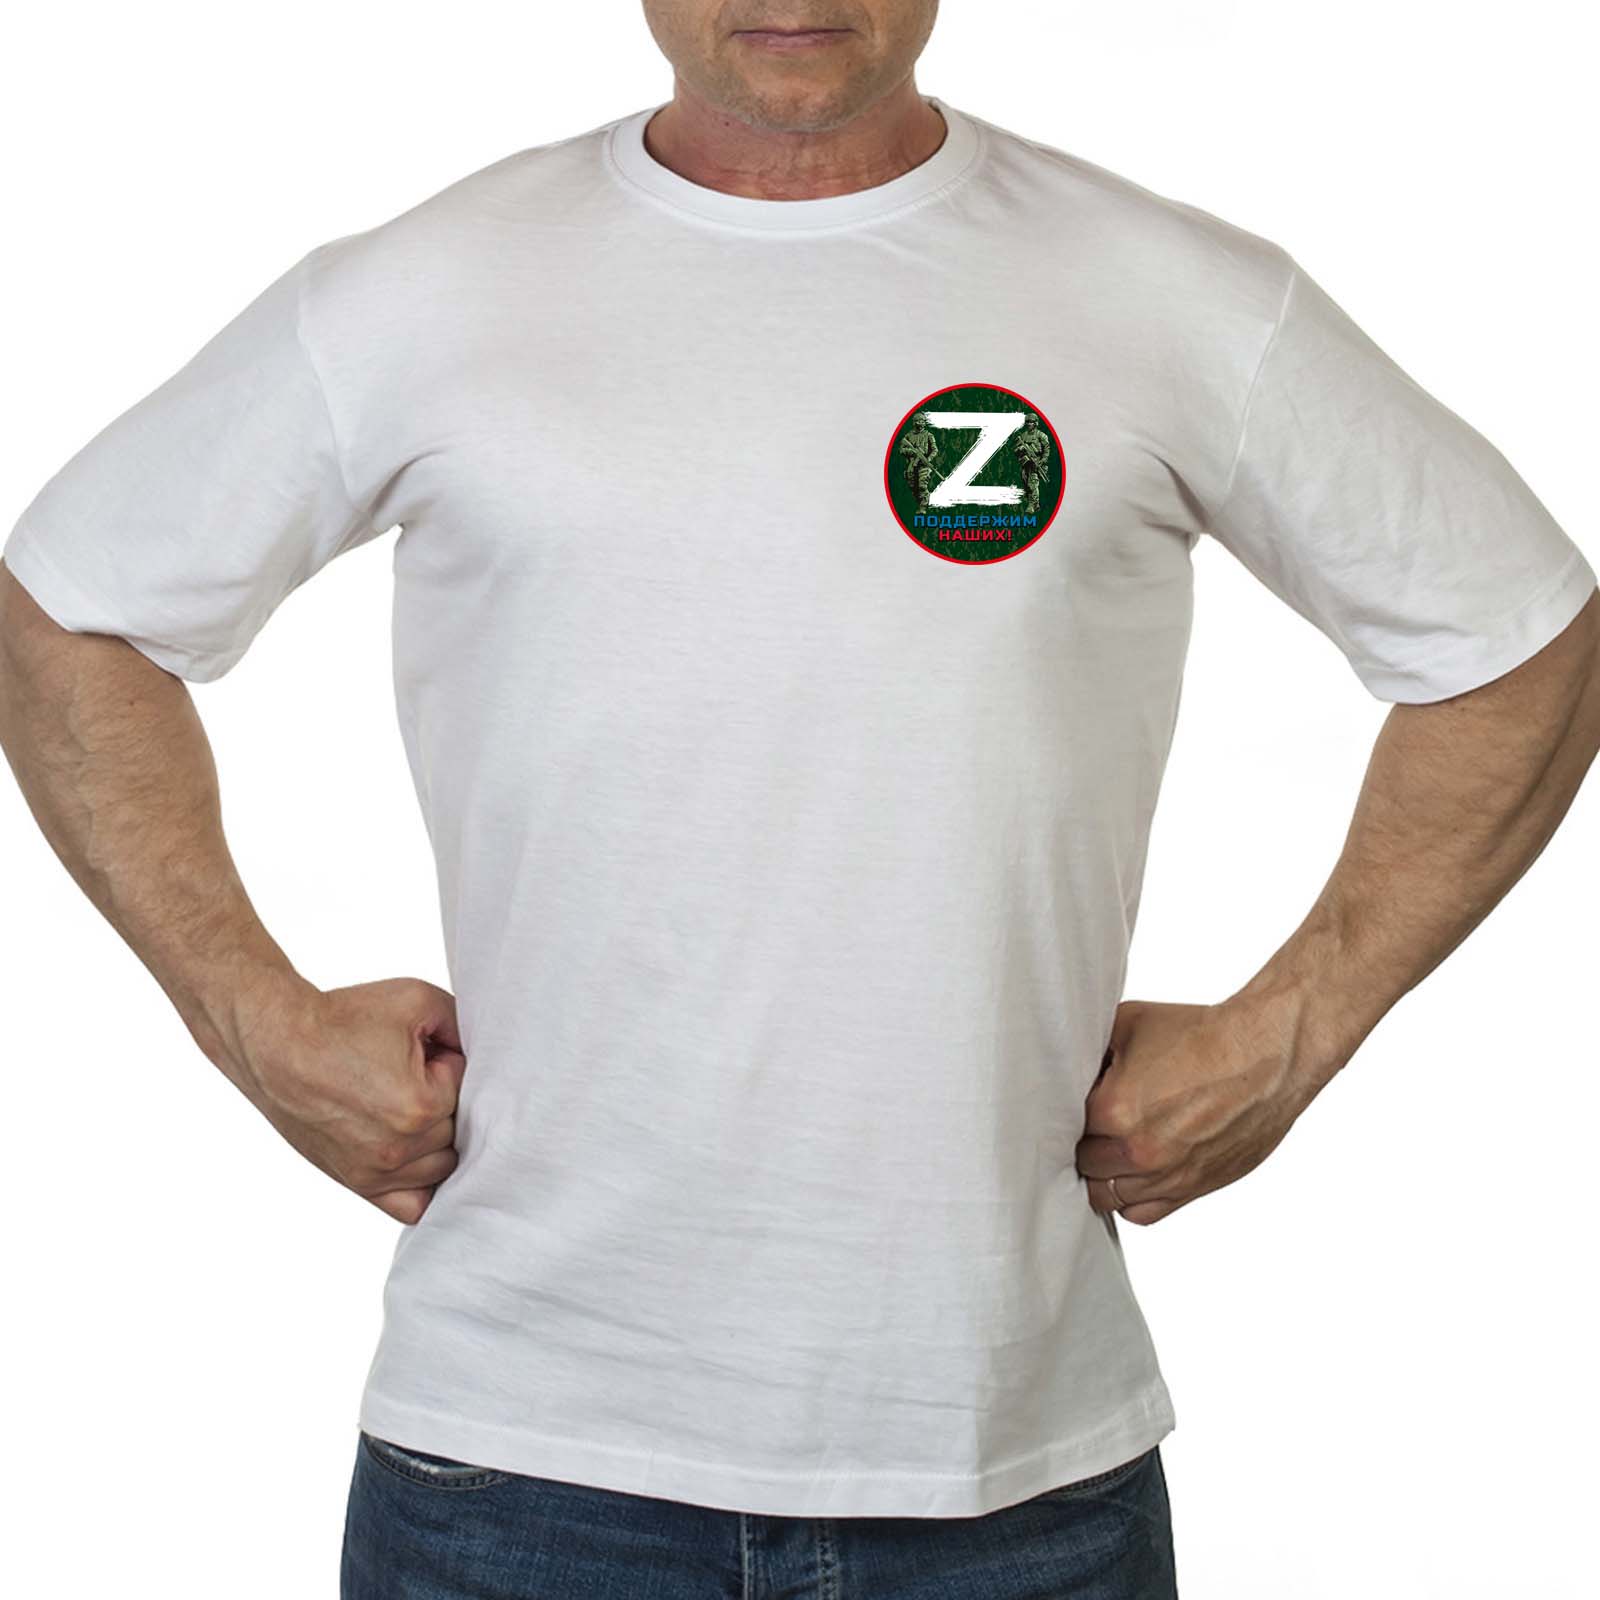 Купить футболку с буквой Z